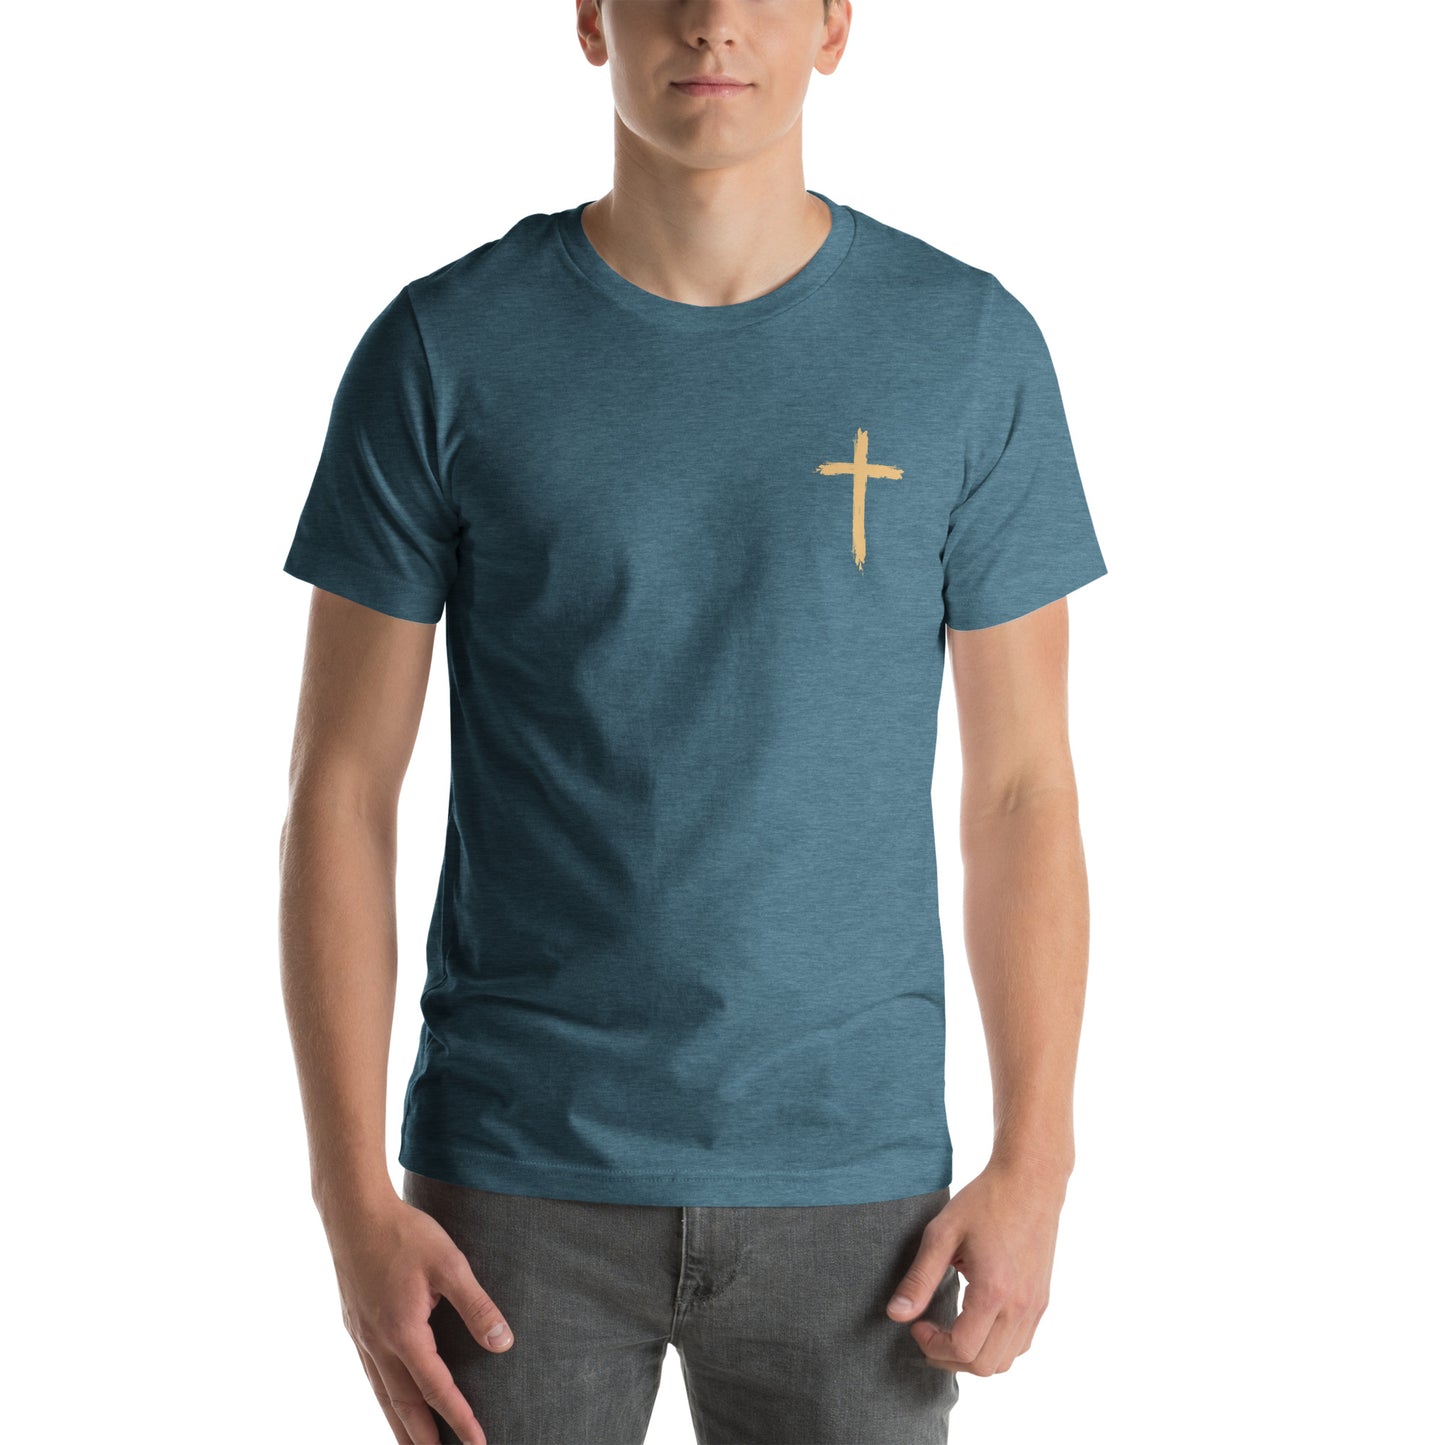 Living Proof of a Loving God t-shirt